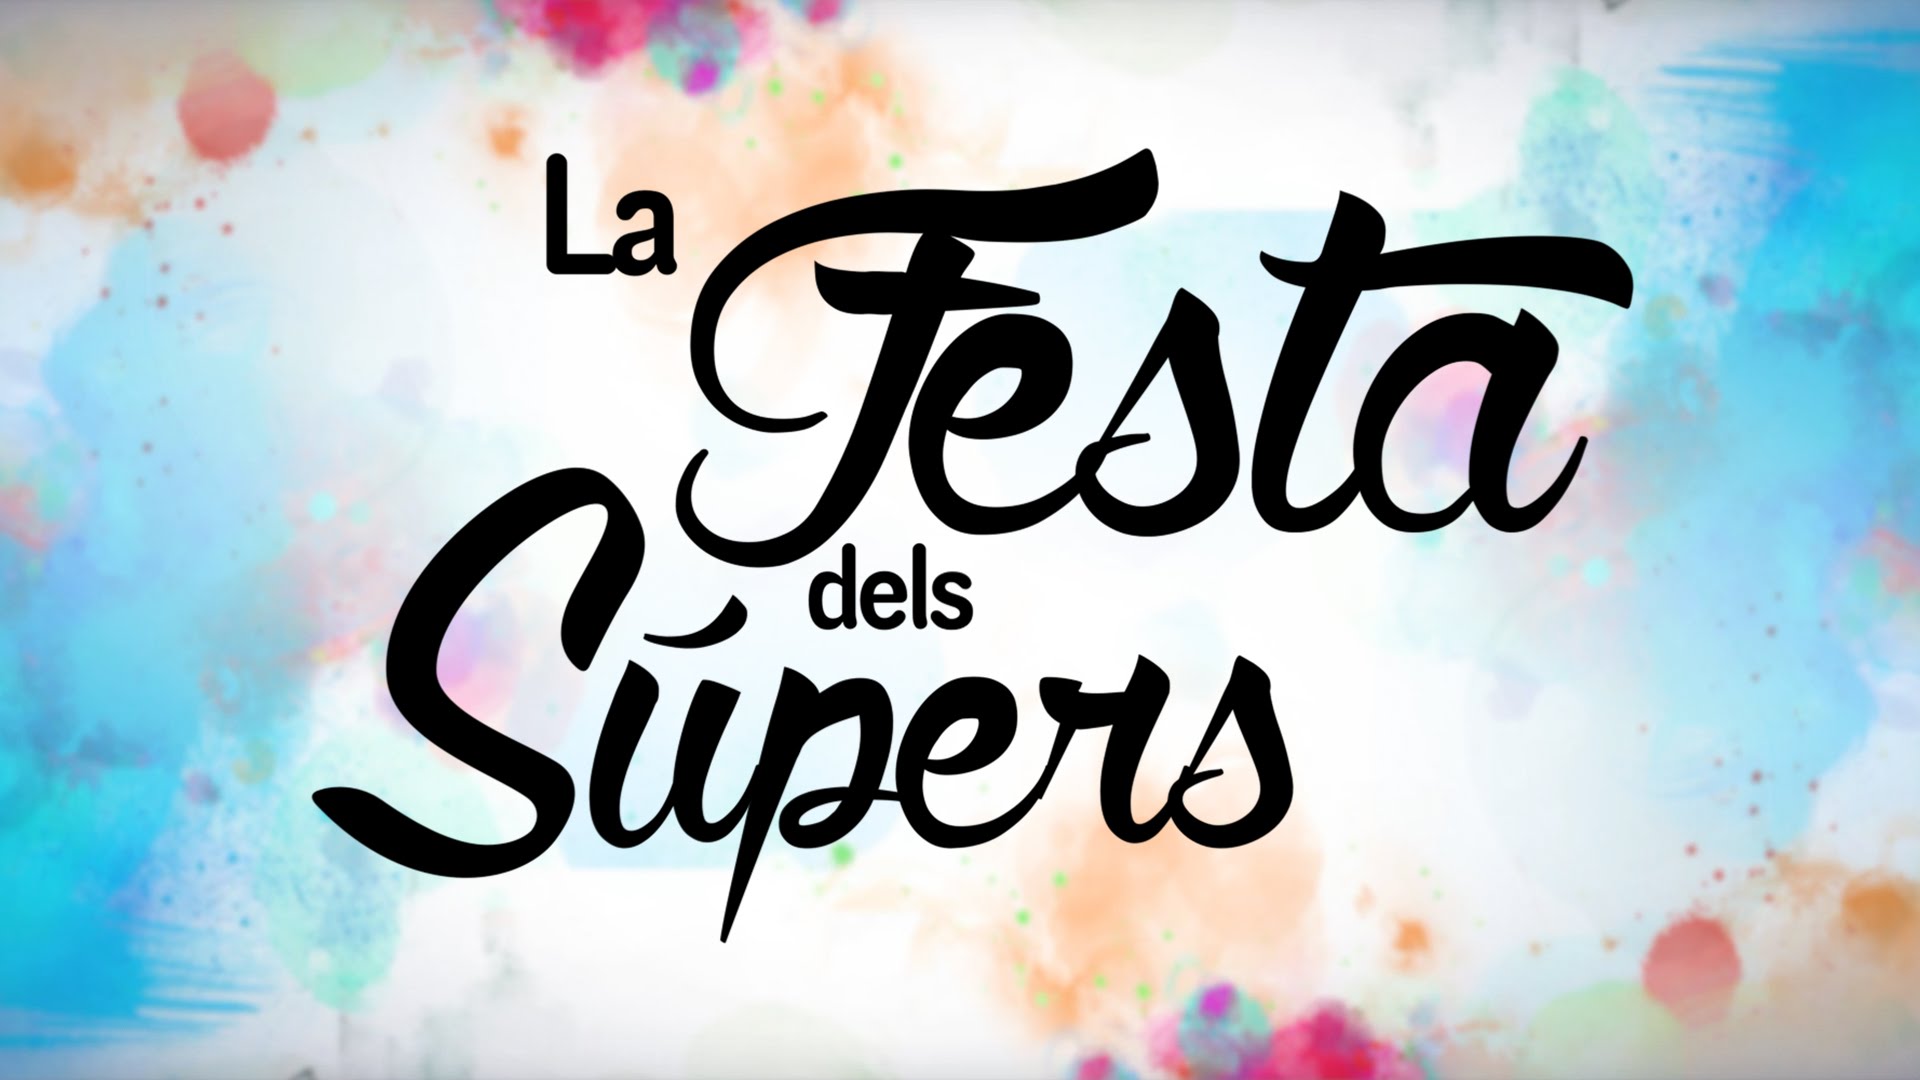 Festa dels Súpers 2015 - Arkandú de La pissarra